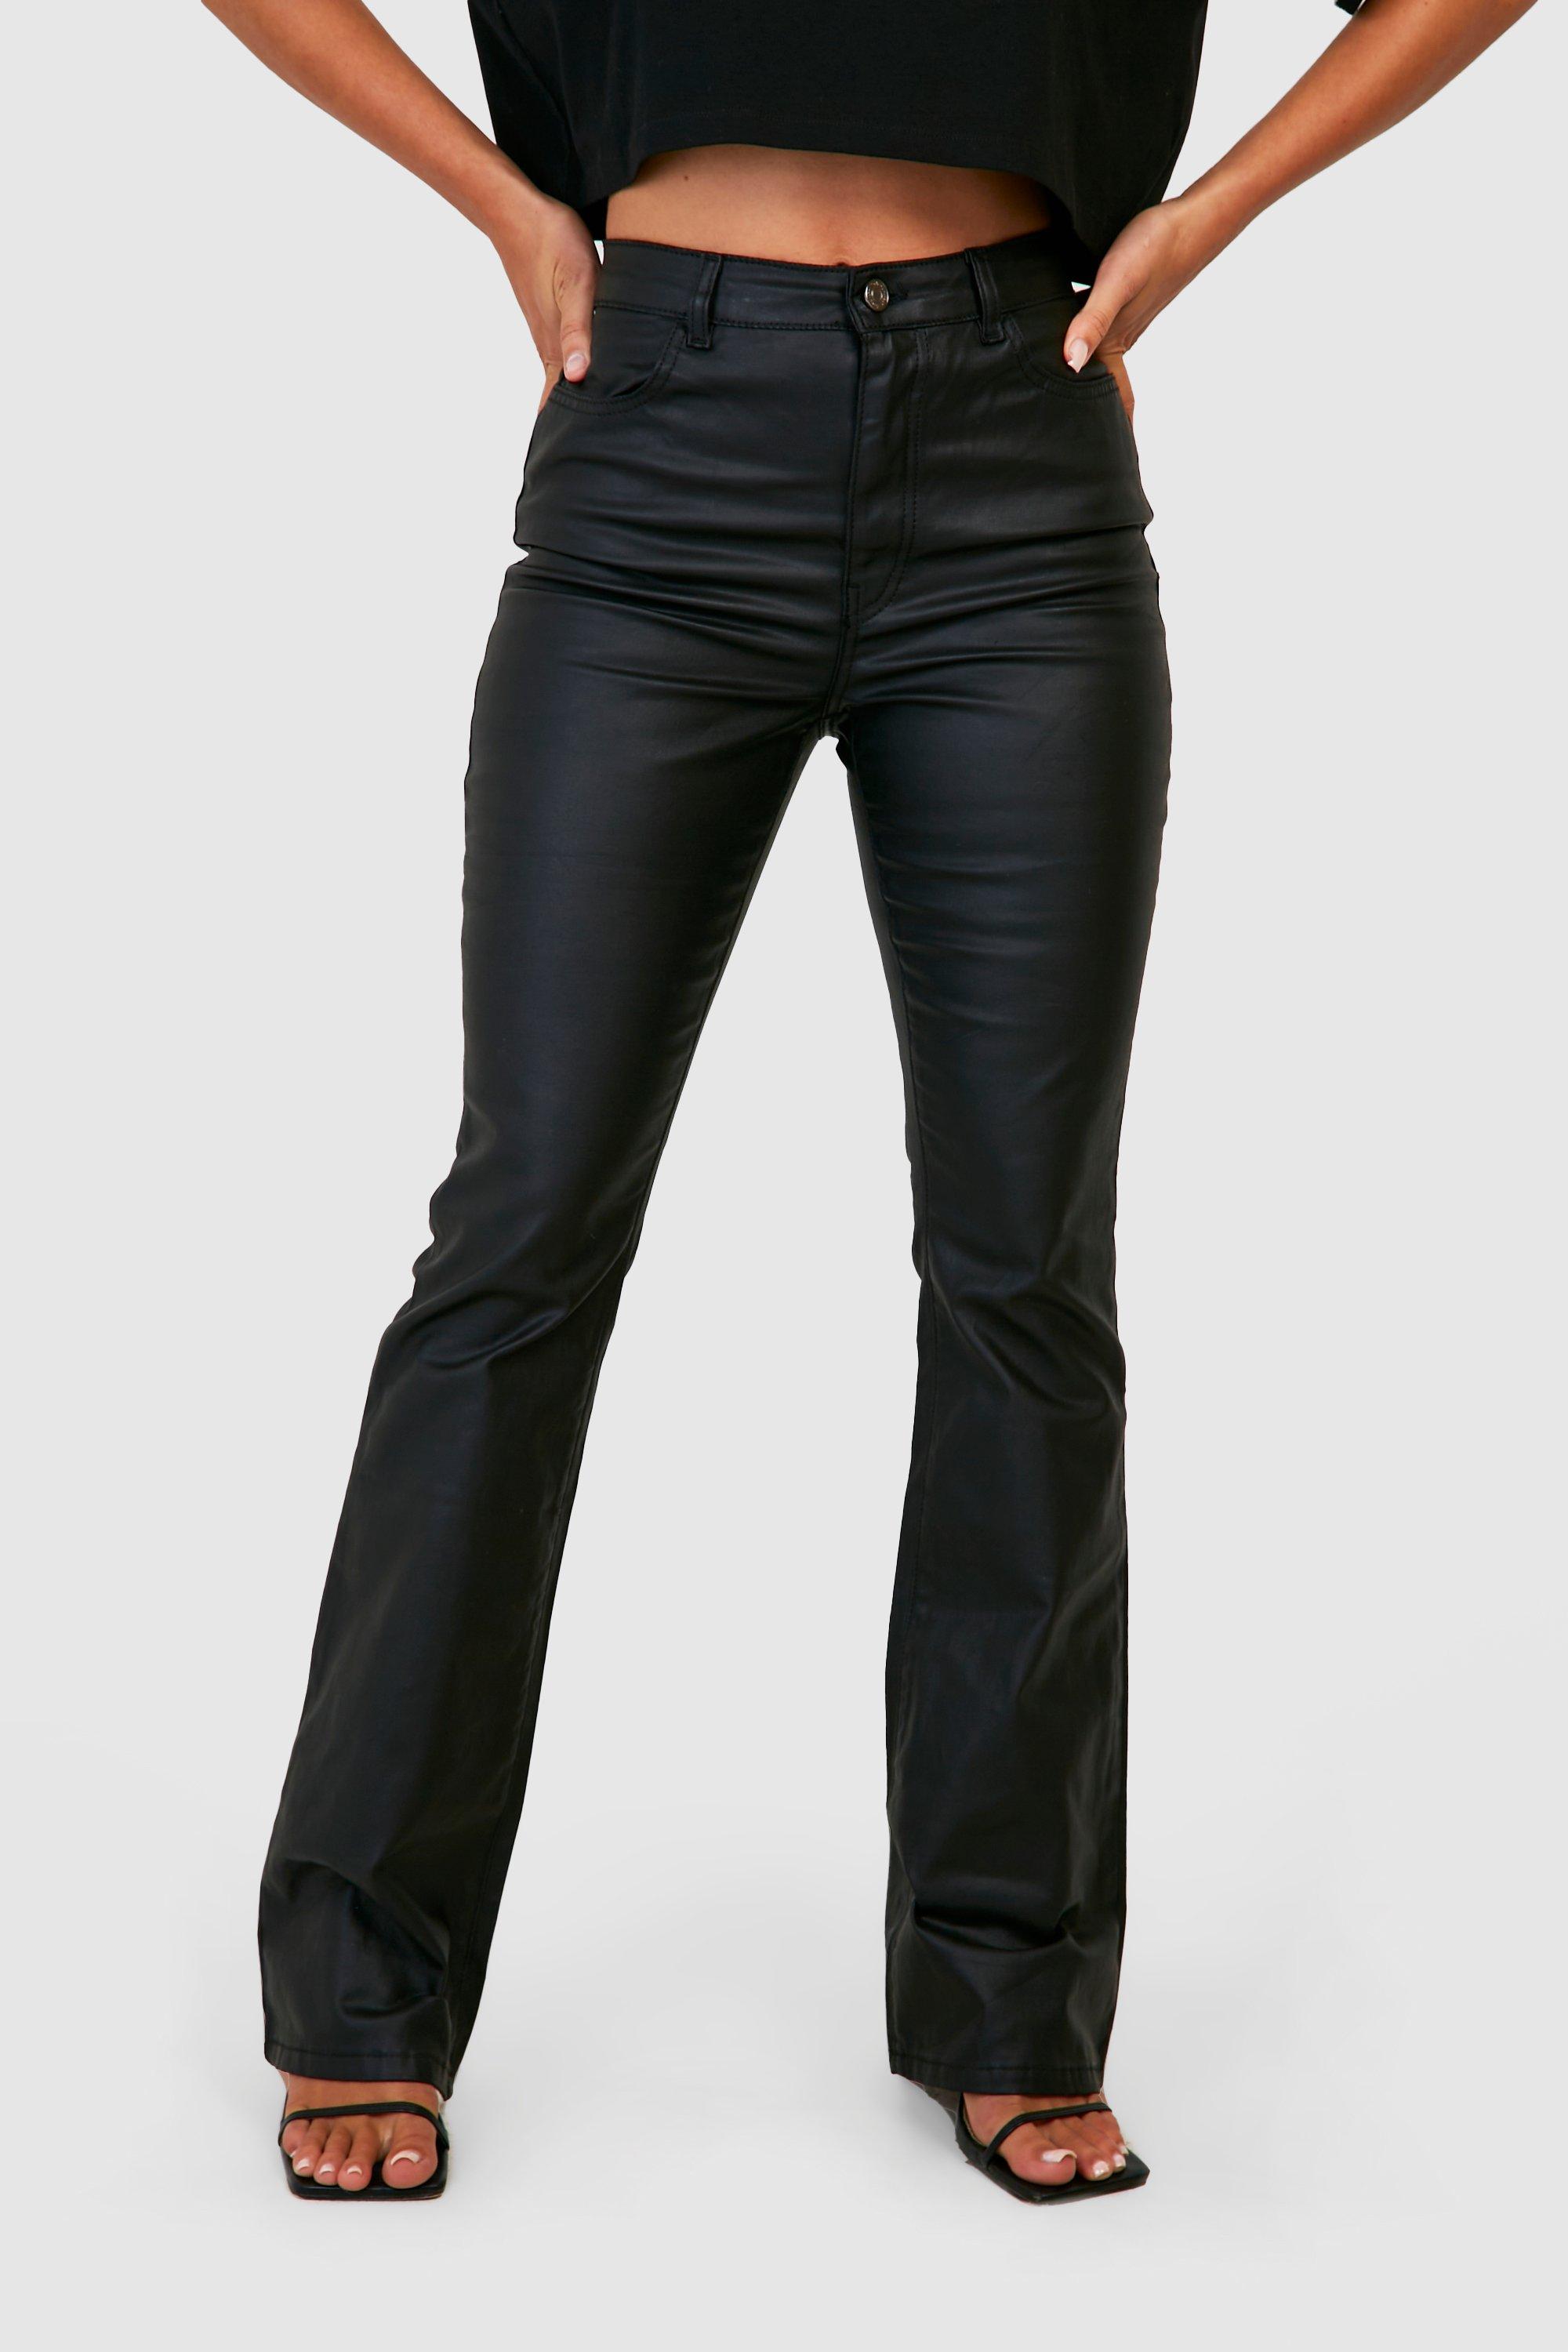 https://media.boohoo.com/i/boohoo/gzz26796_black_xl_3/female-black-coated-high-waisted-flared-jeans